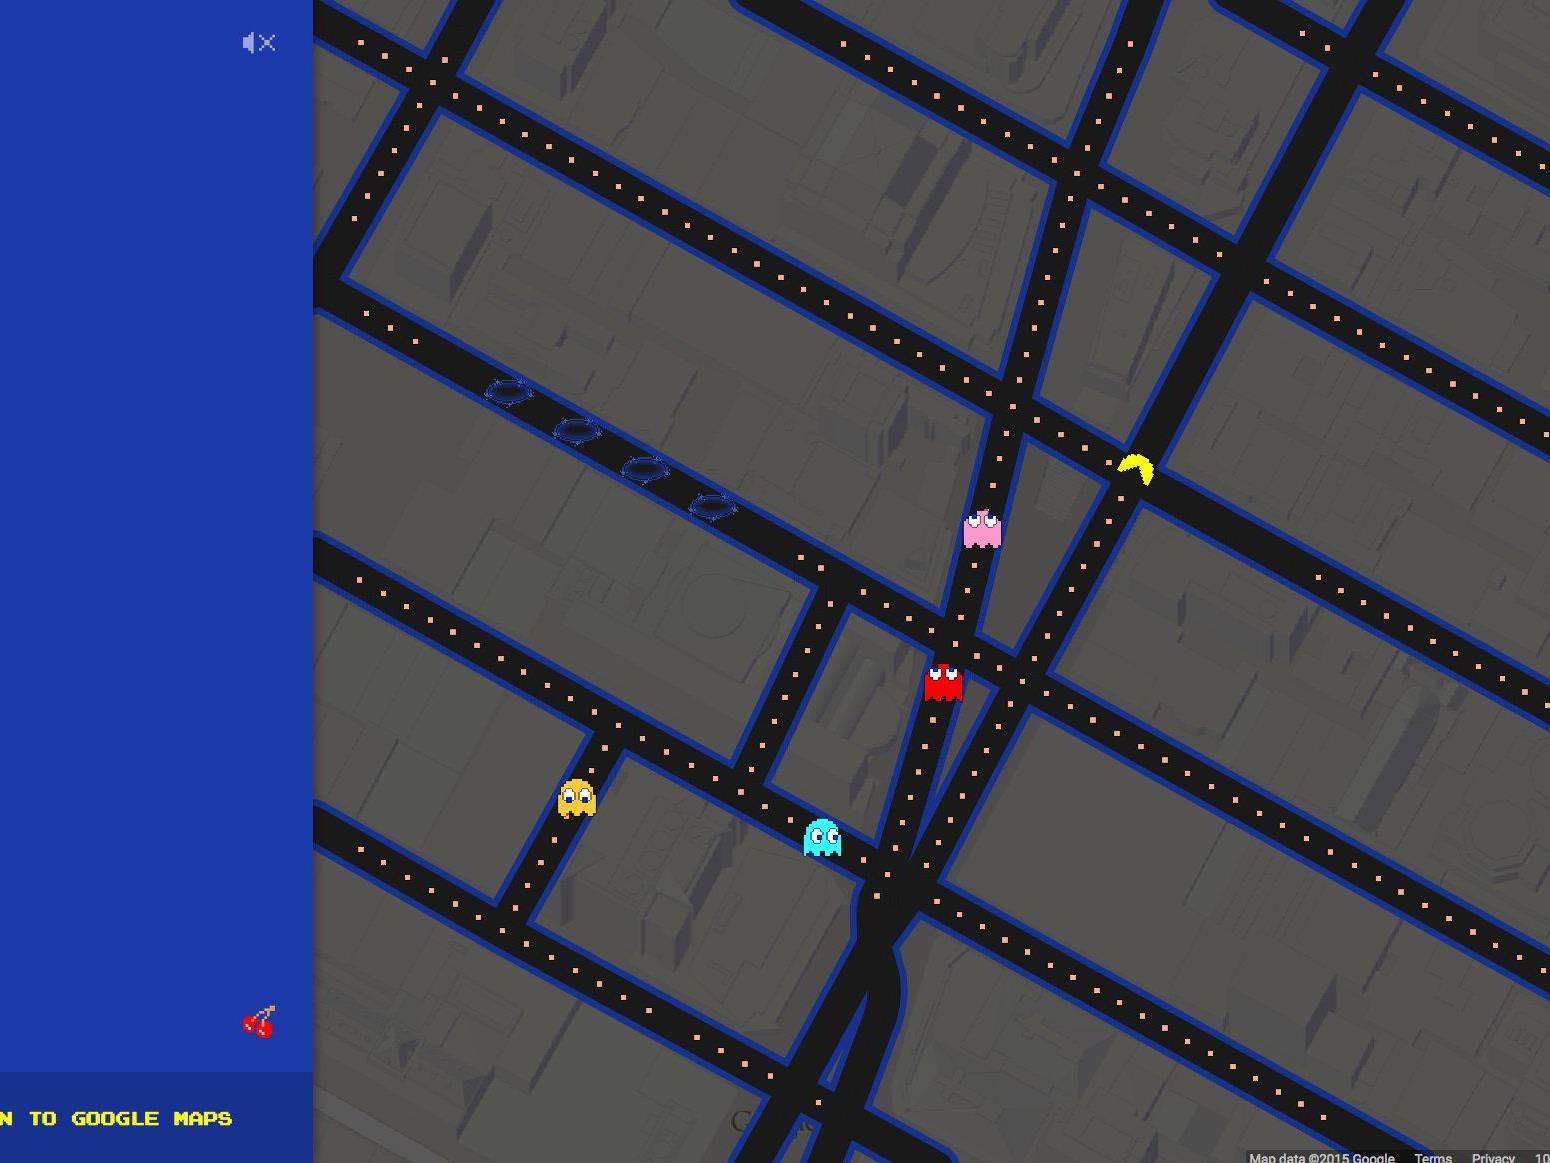 Pac-Man vergnügt sich jetzt auf den Straßenkarten von Google Maps.